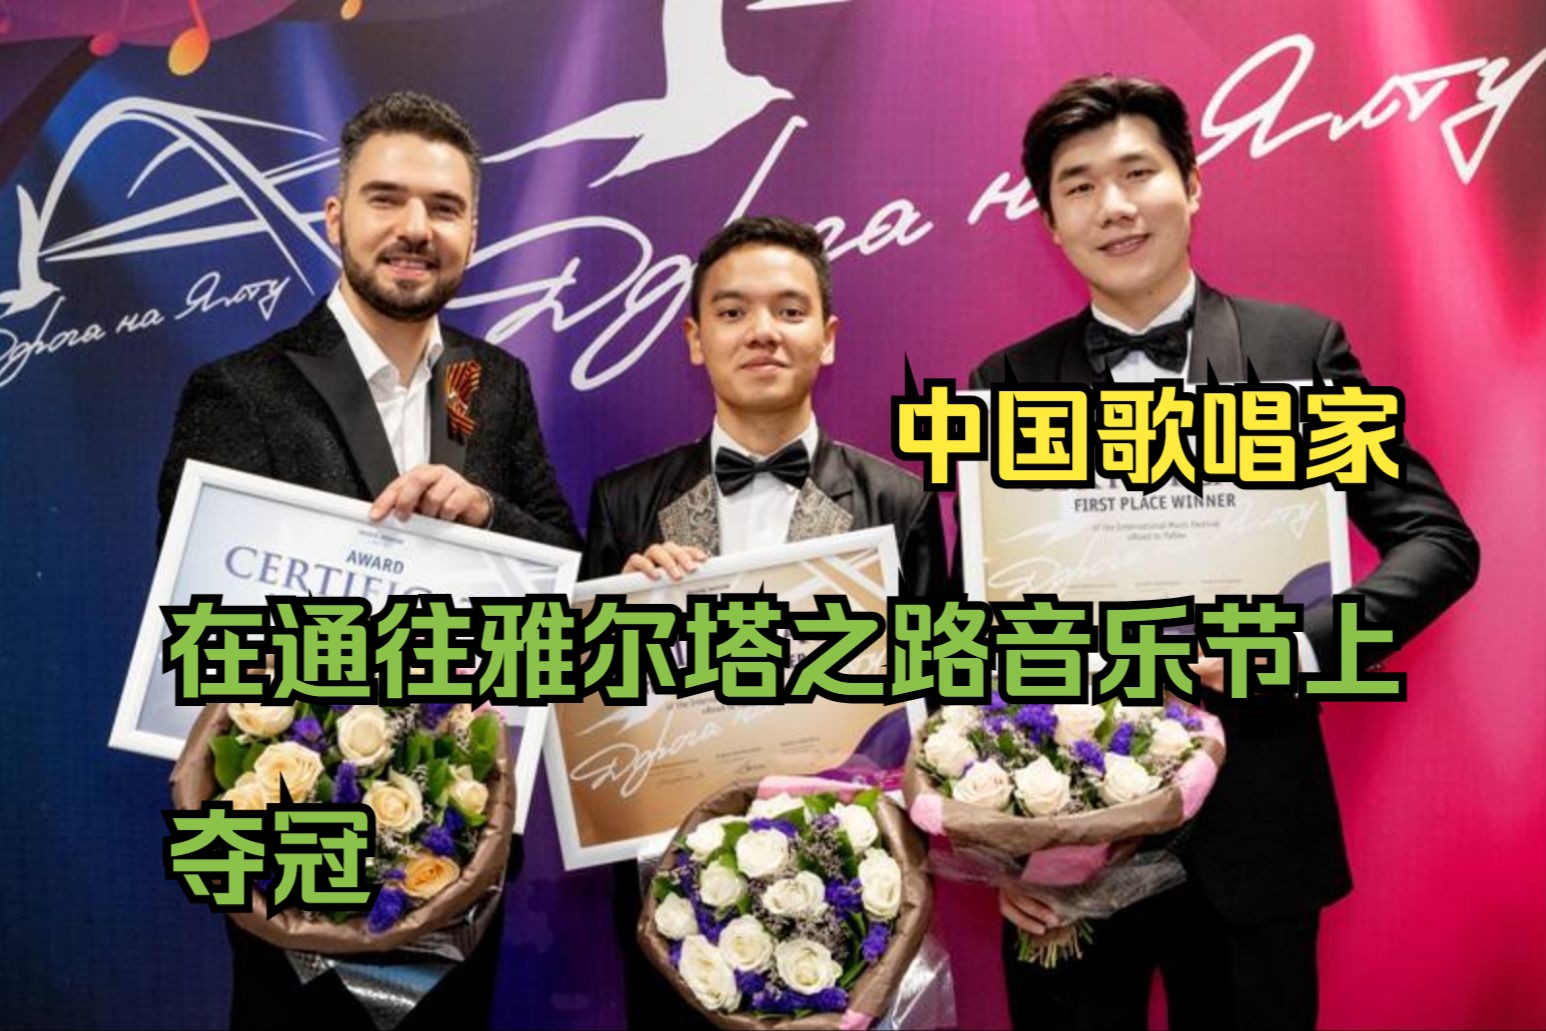 中国歌唱家在通往雅尔塔之路音乐节上夺冠